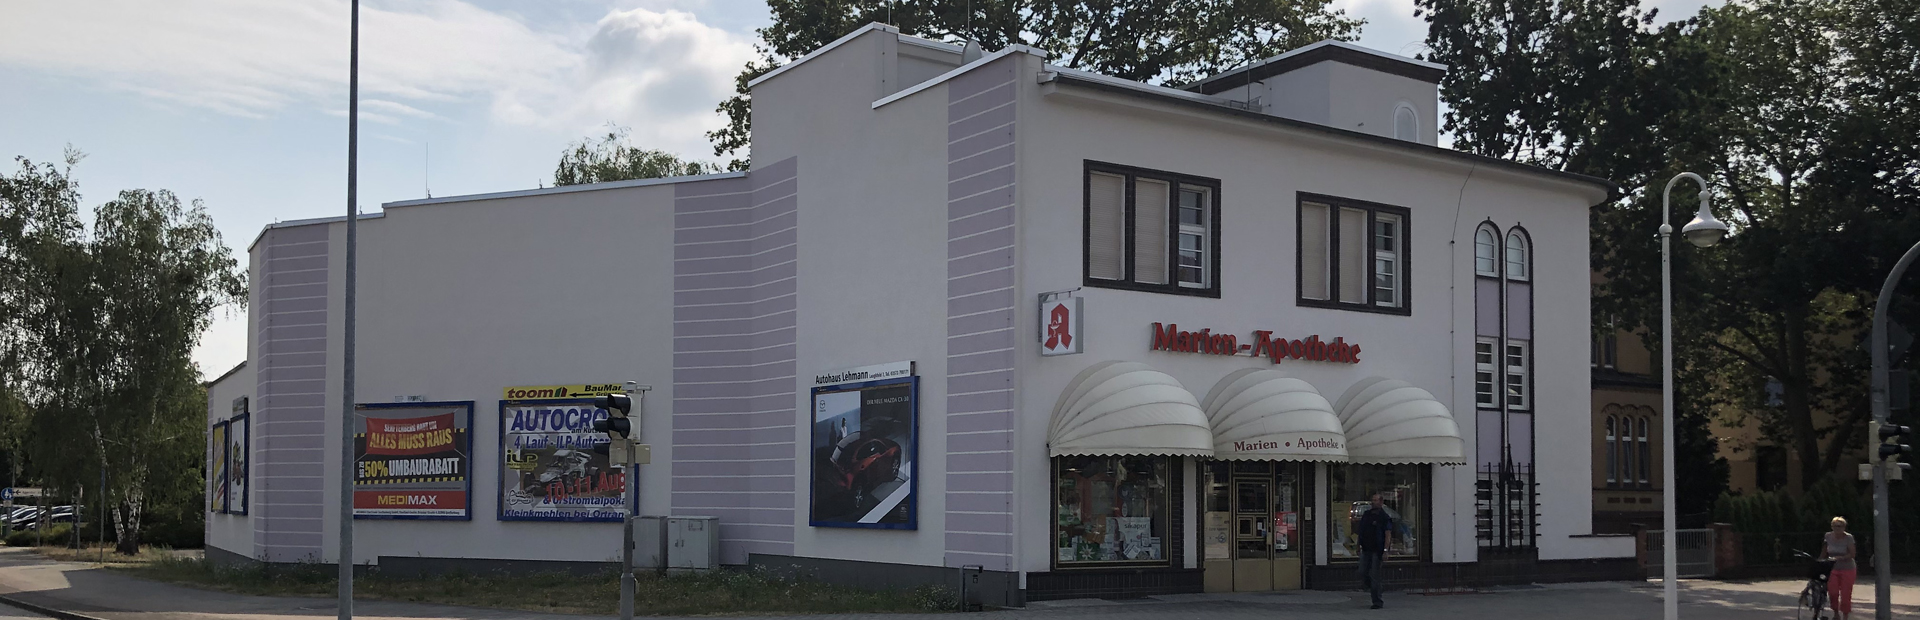 ALB Dachbau GmbH - Dachdeckerei, Zimmerei und Klempnerei aus Senftenberg in Brandenburg